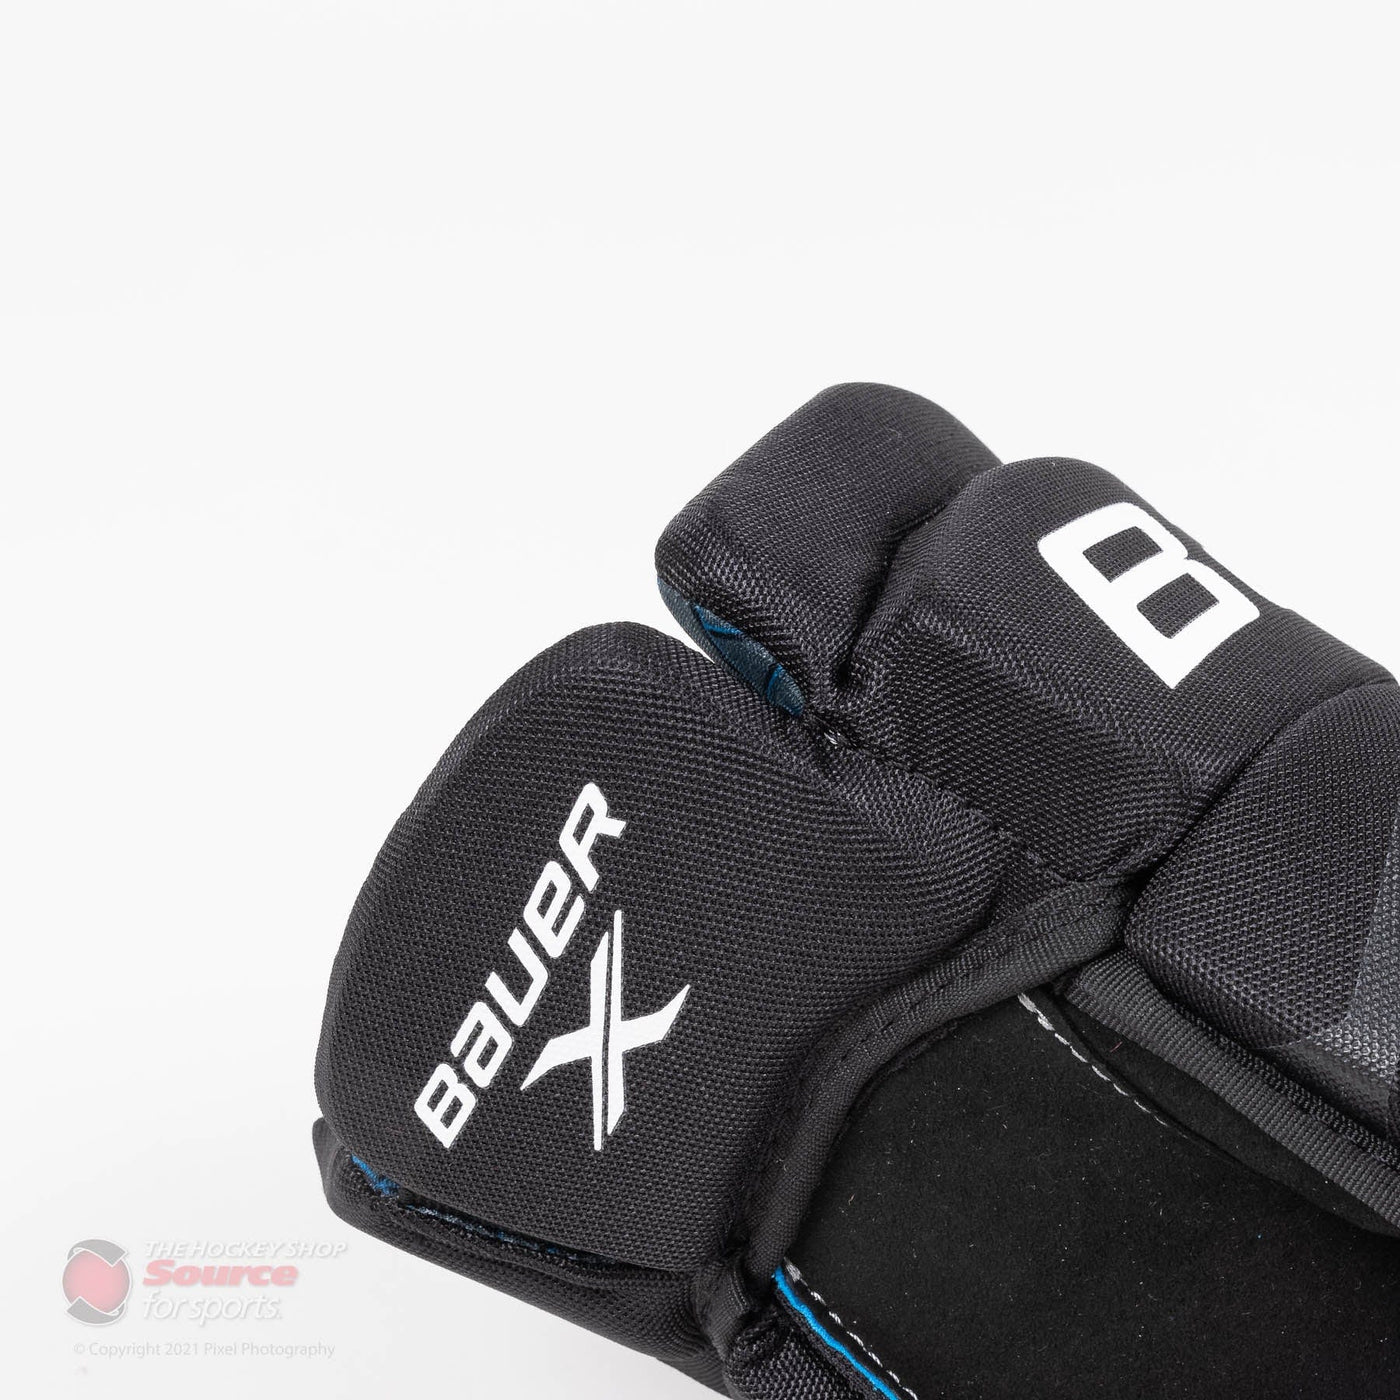 Bauer X Senior Hockey Gloves